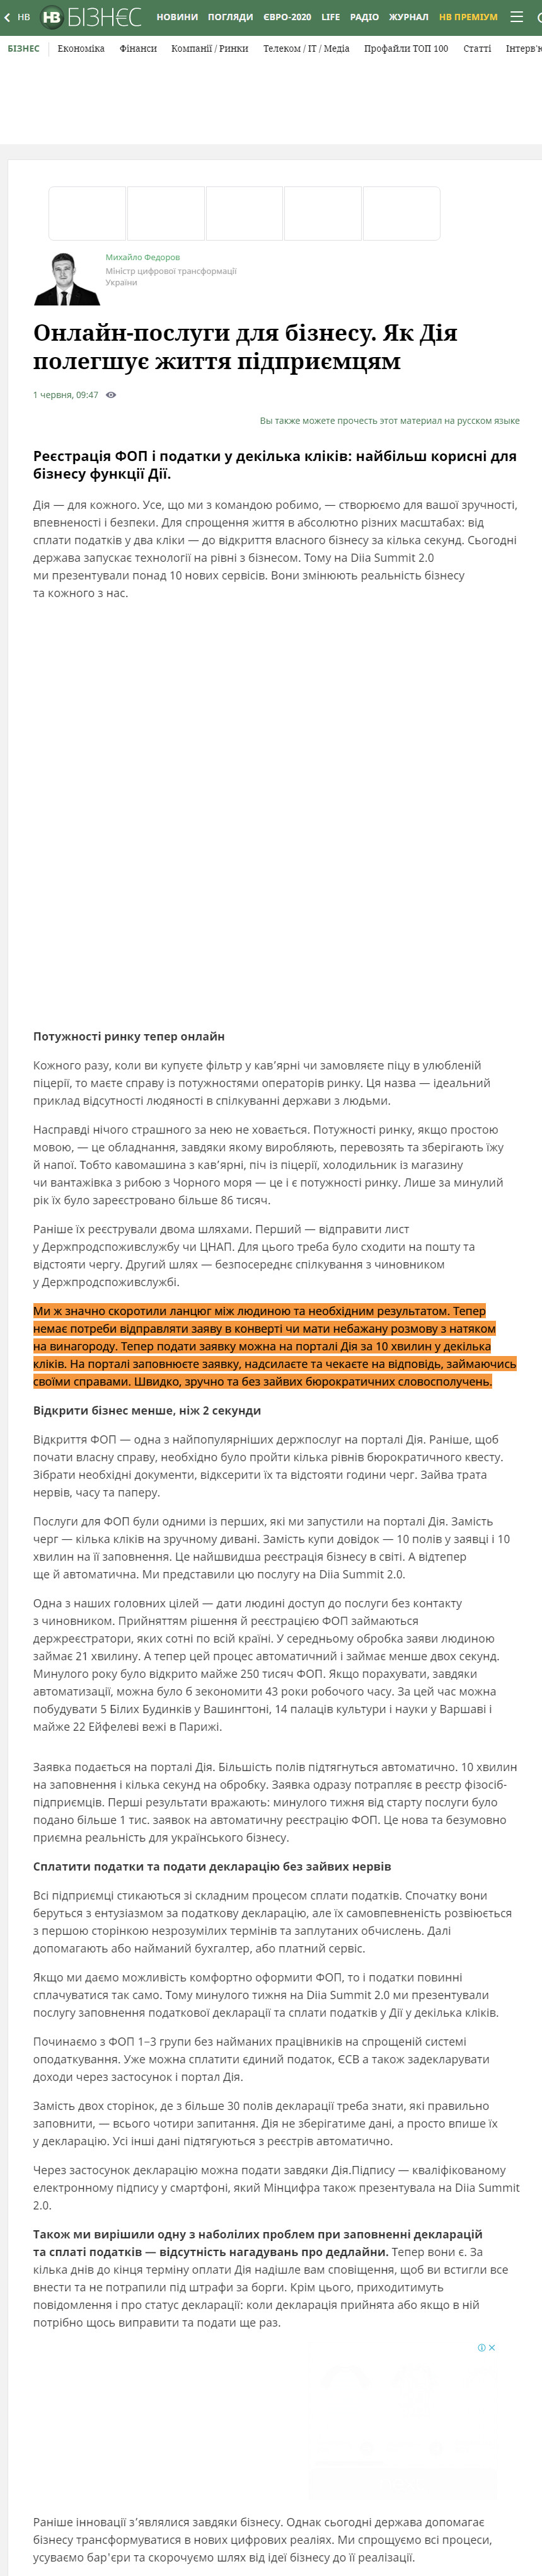 https://biz.nv.ua/ukr/experts/diya-dlya-pidpriyemciv-naykorisnishe-zaplatiti-podatki-ta-zareyestruvati-fop-novini-ukrajini-50163059.html